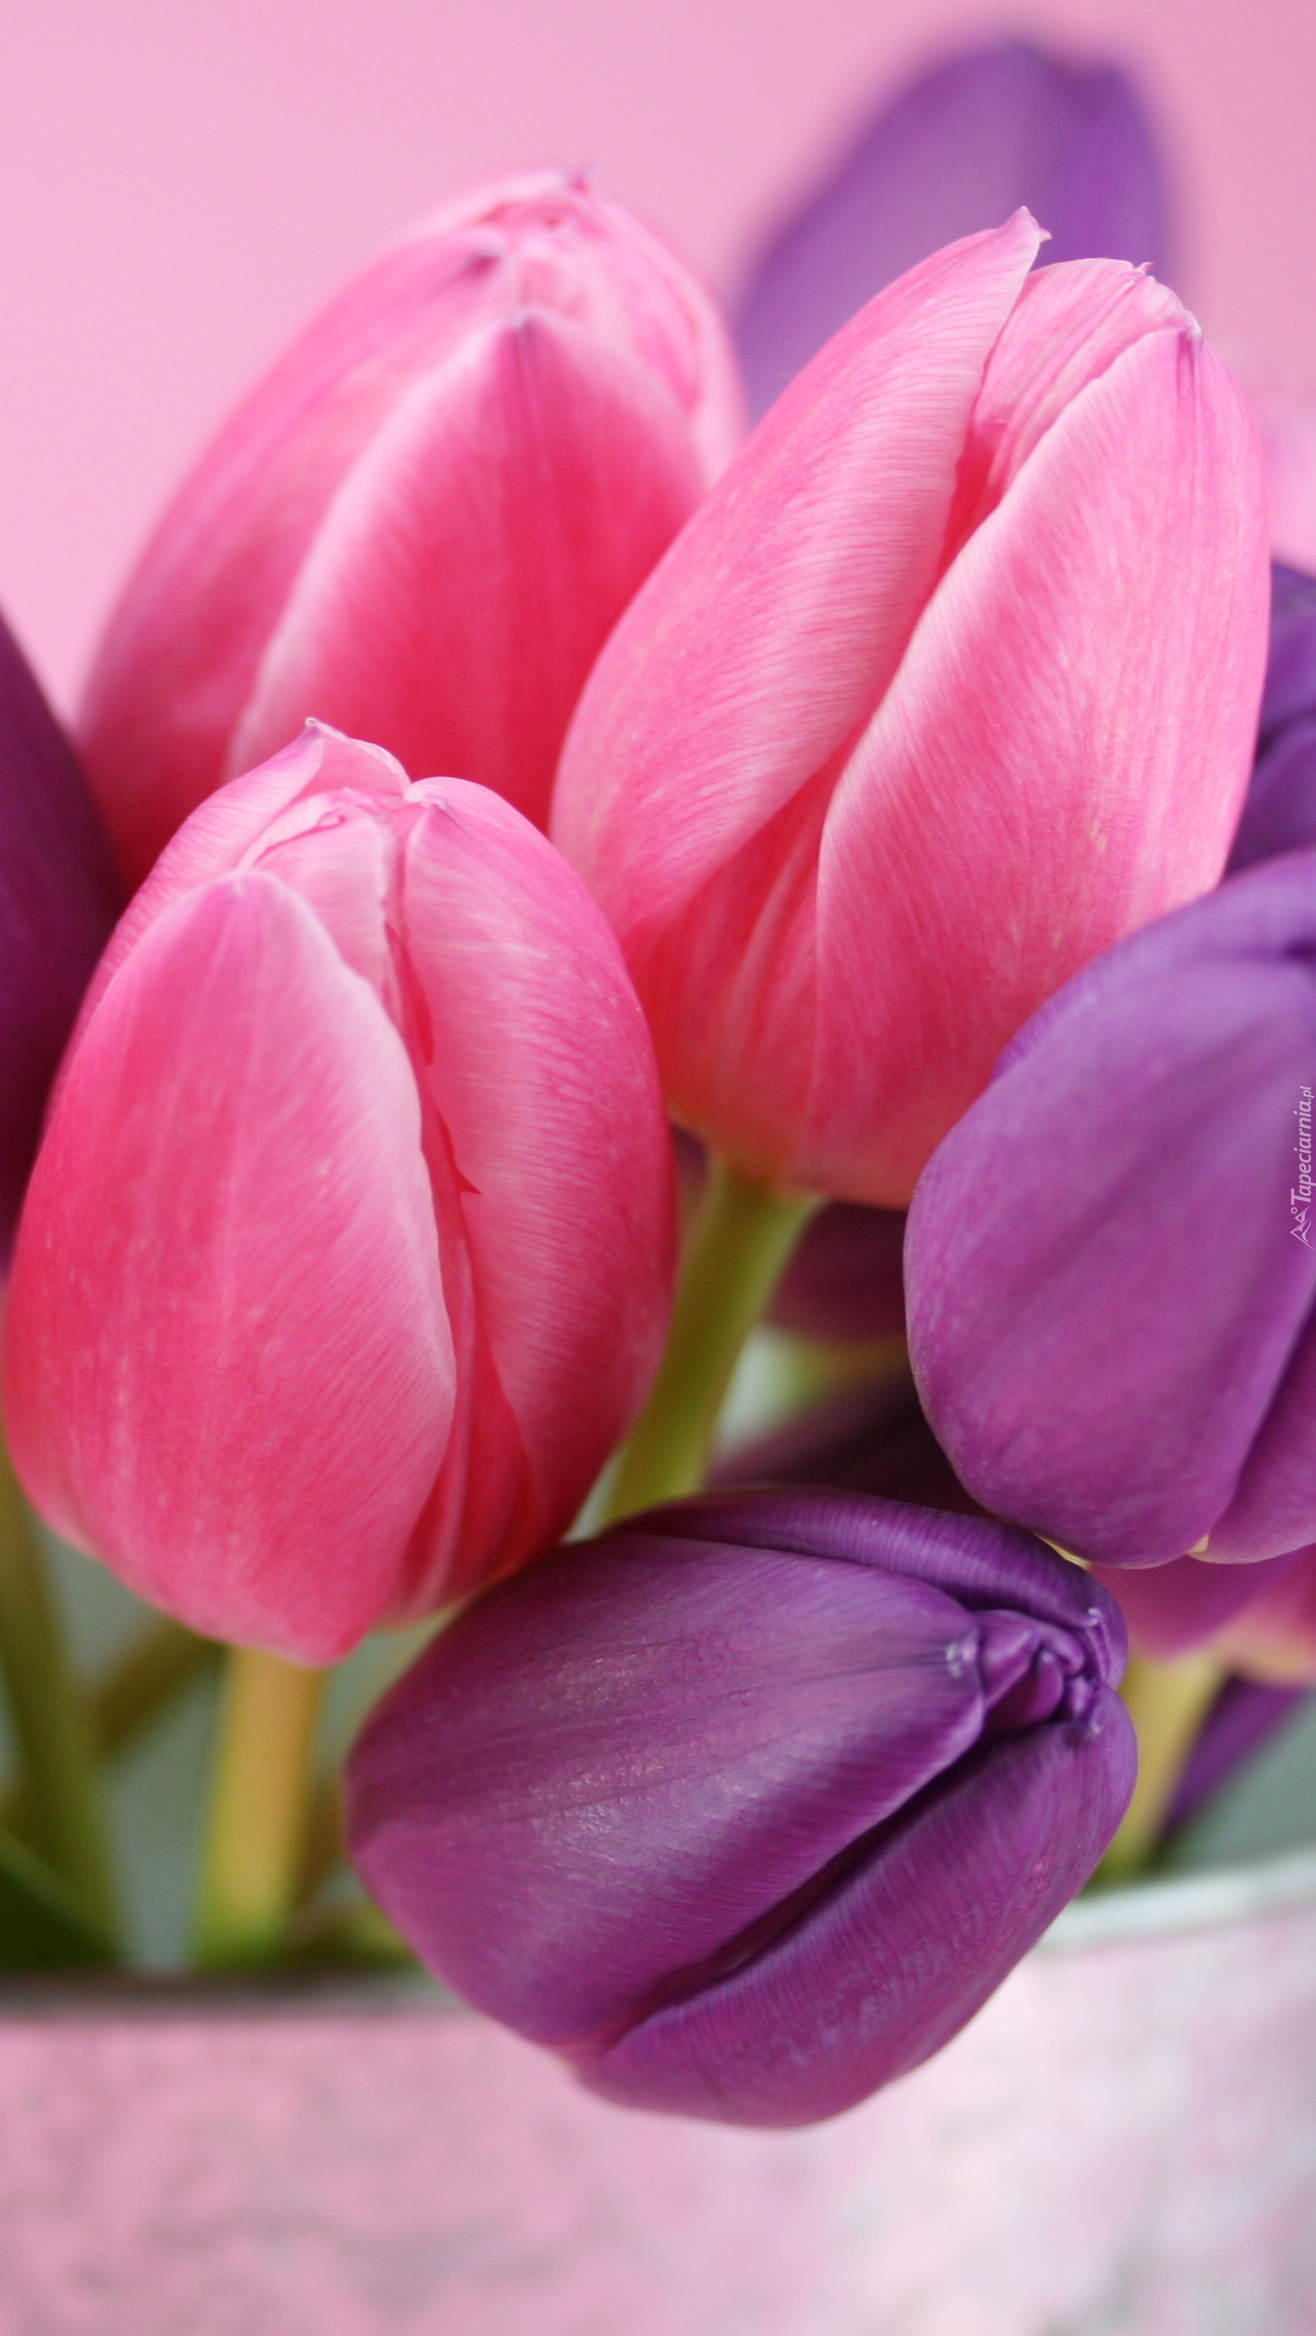 Fioletowo-różowy bukiet tulipanów w wiaderku